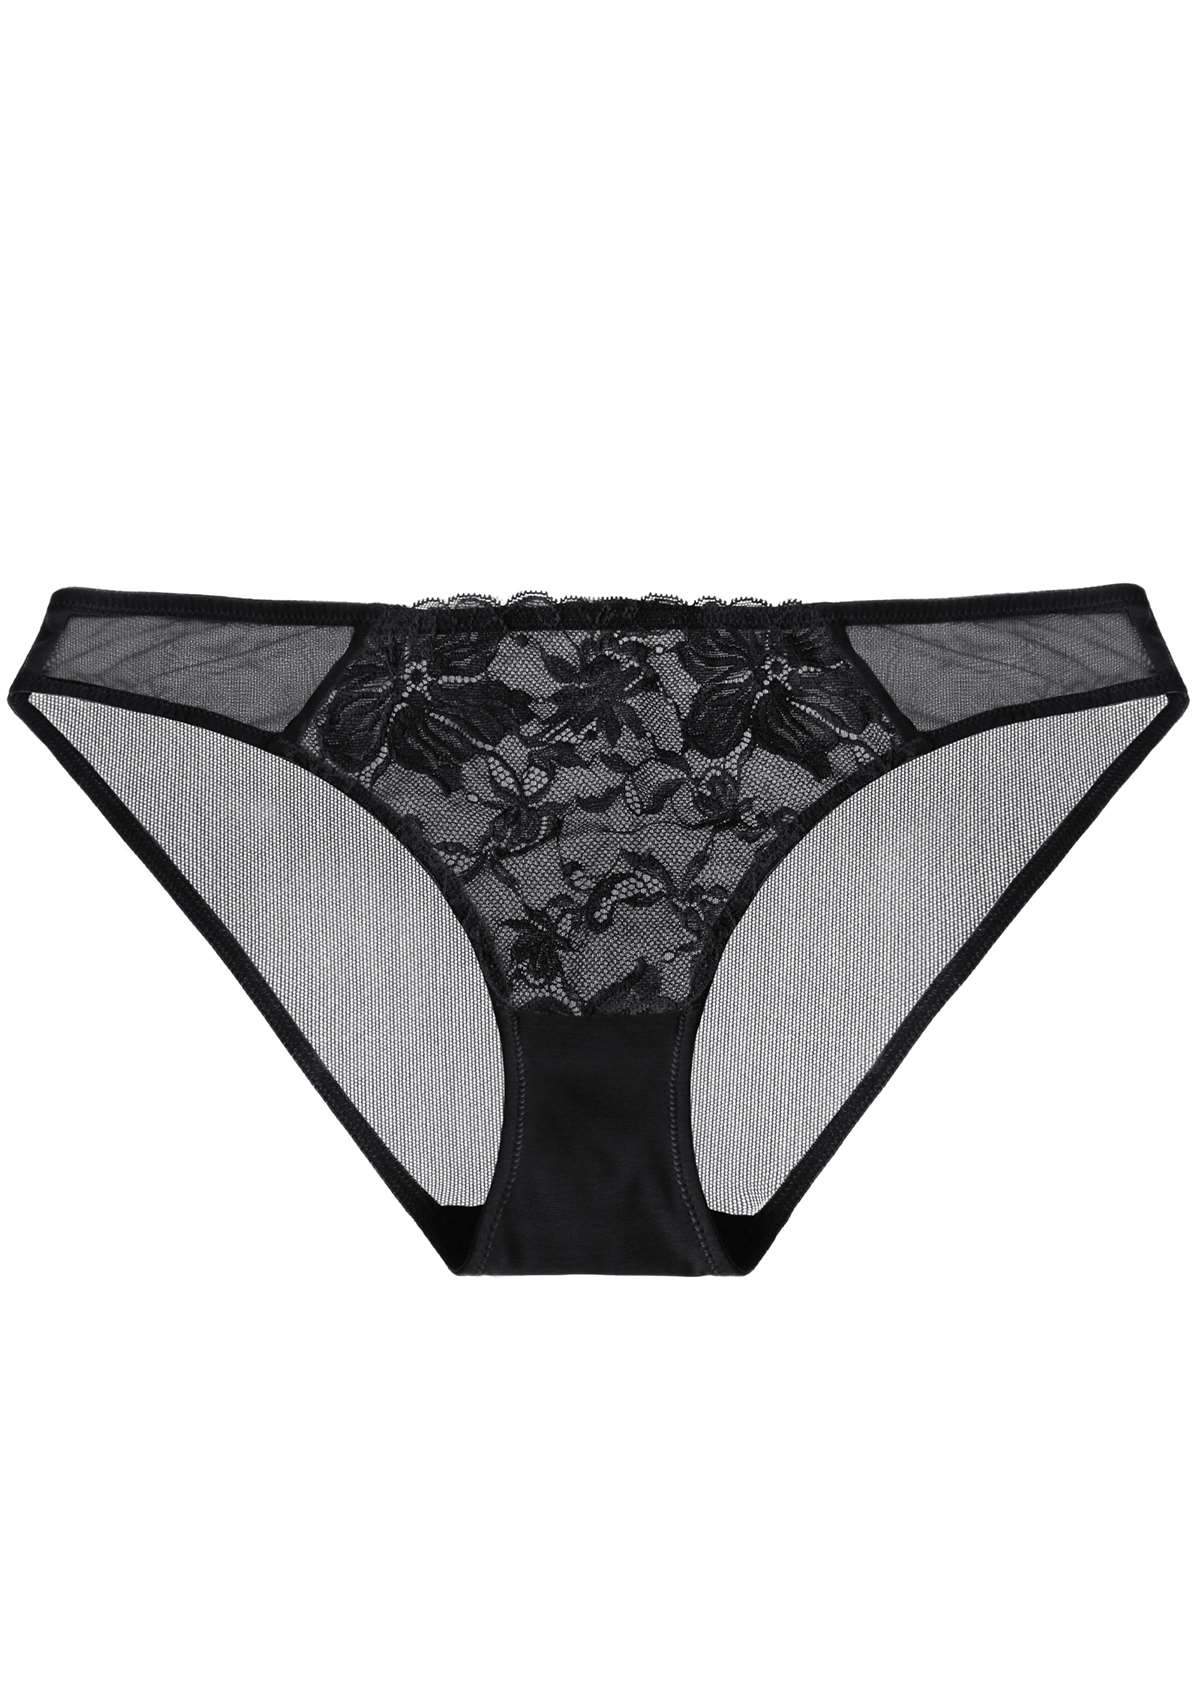 HSIA Pretty In Petals Sexy Lightweight Breathable Lace Underwear  - XXL / Bikini / Black